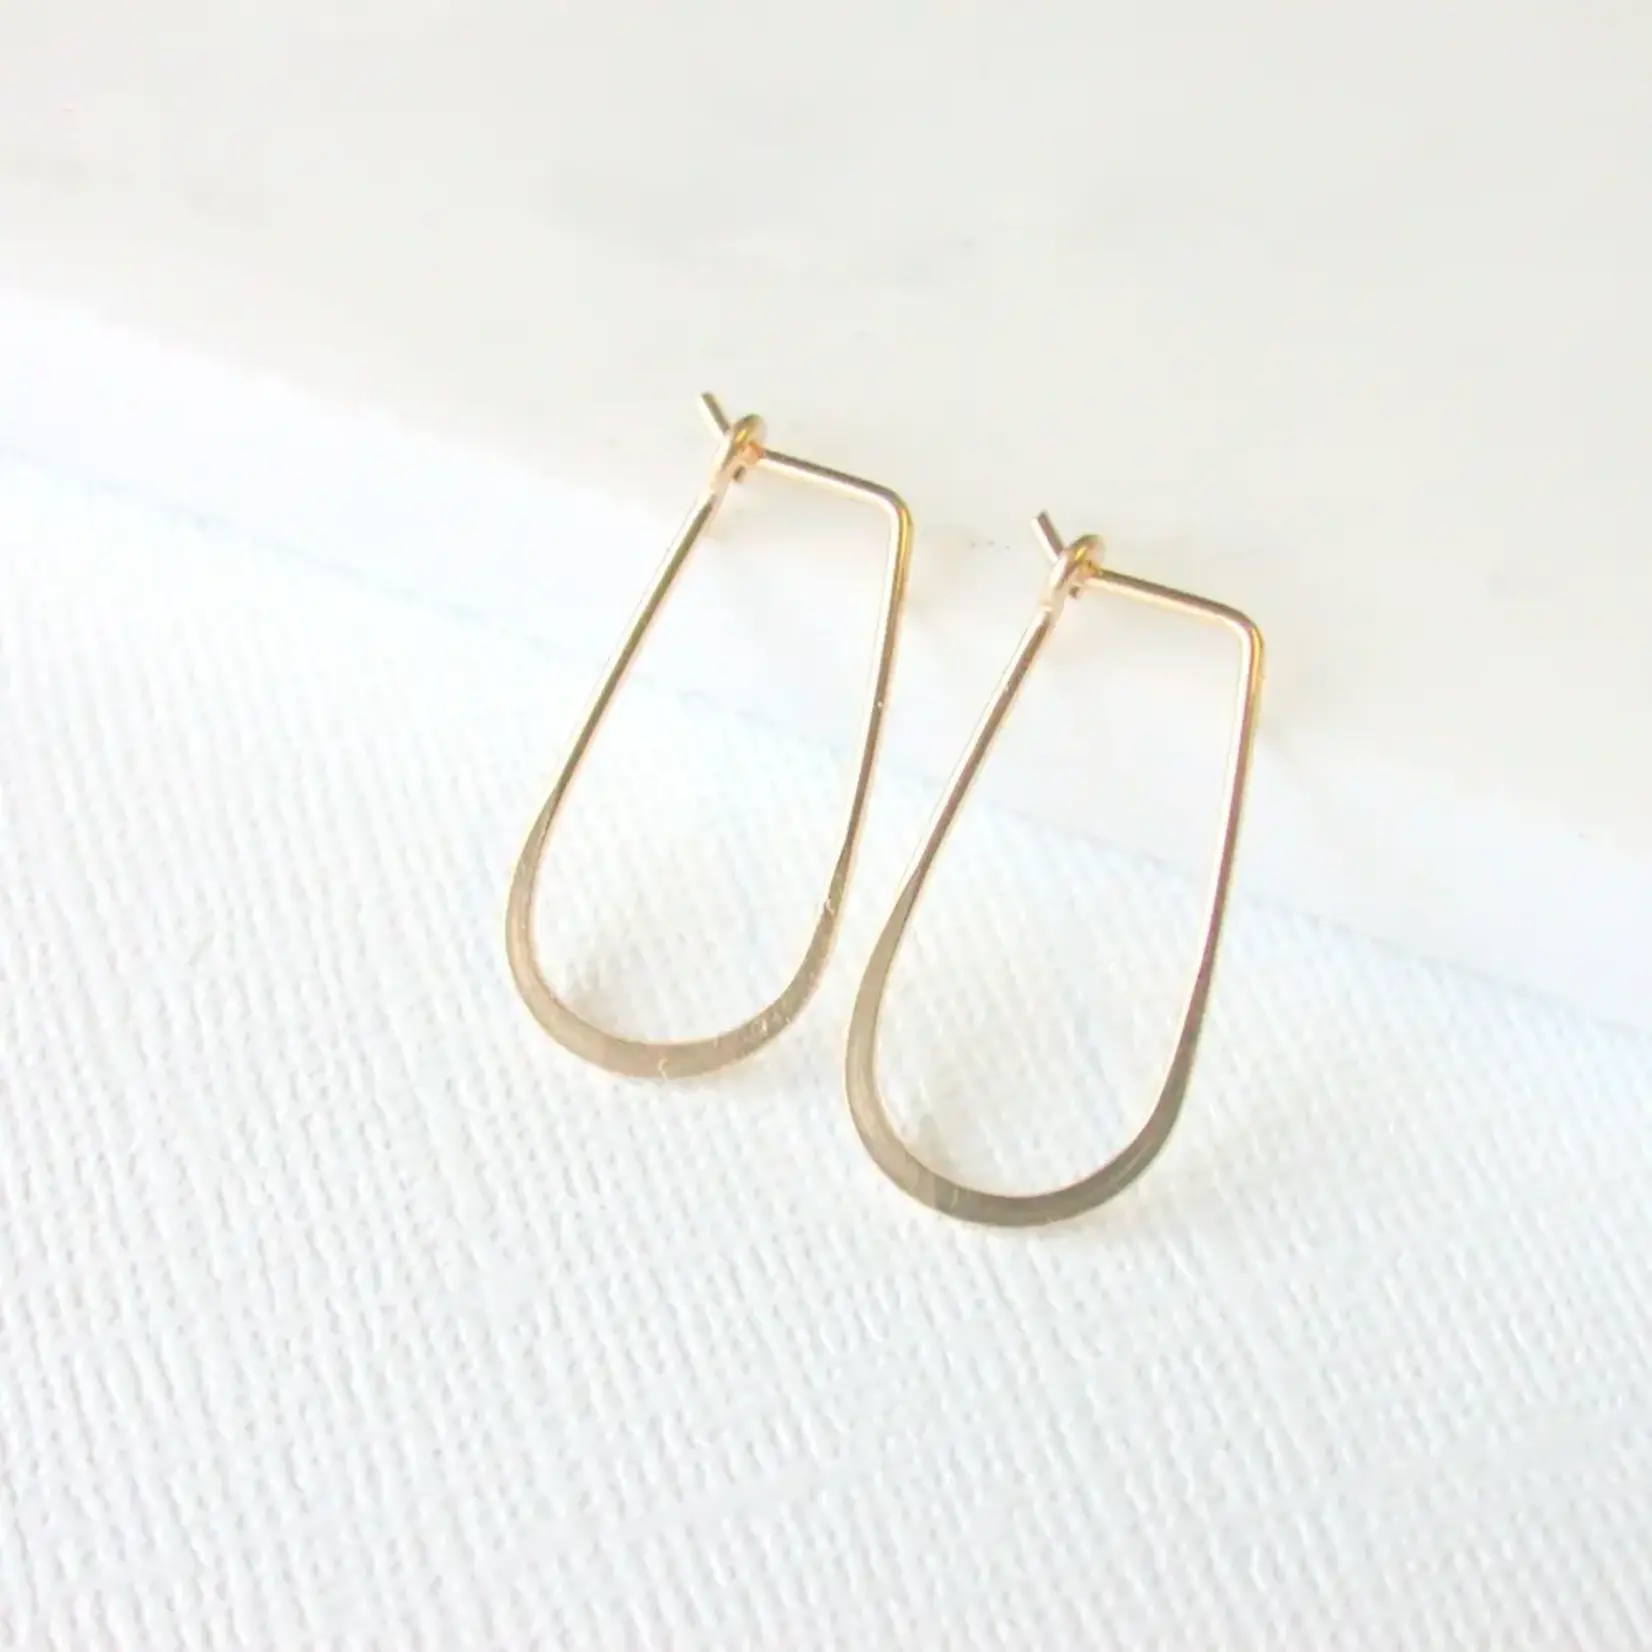 Linda Trent Jewelry 14k Gold Fill Small Slender Teardrop Earrings